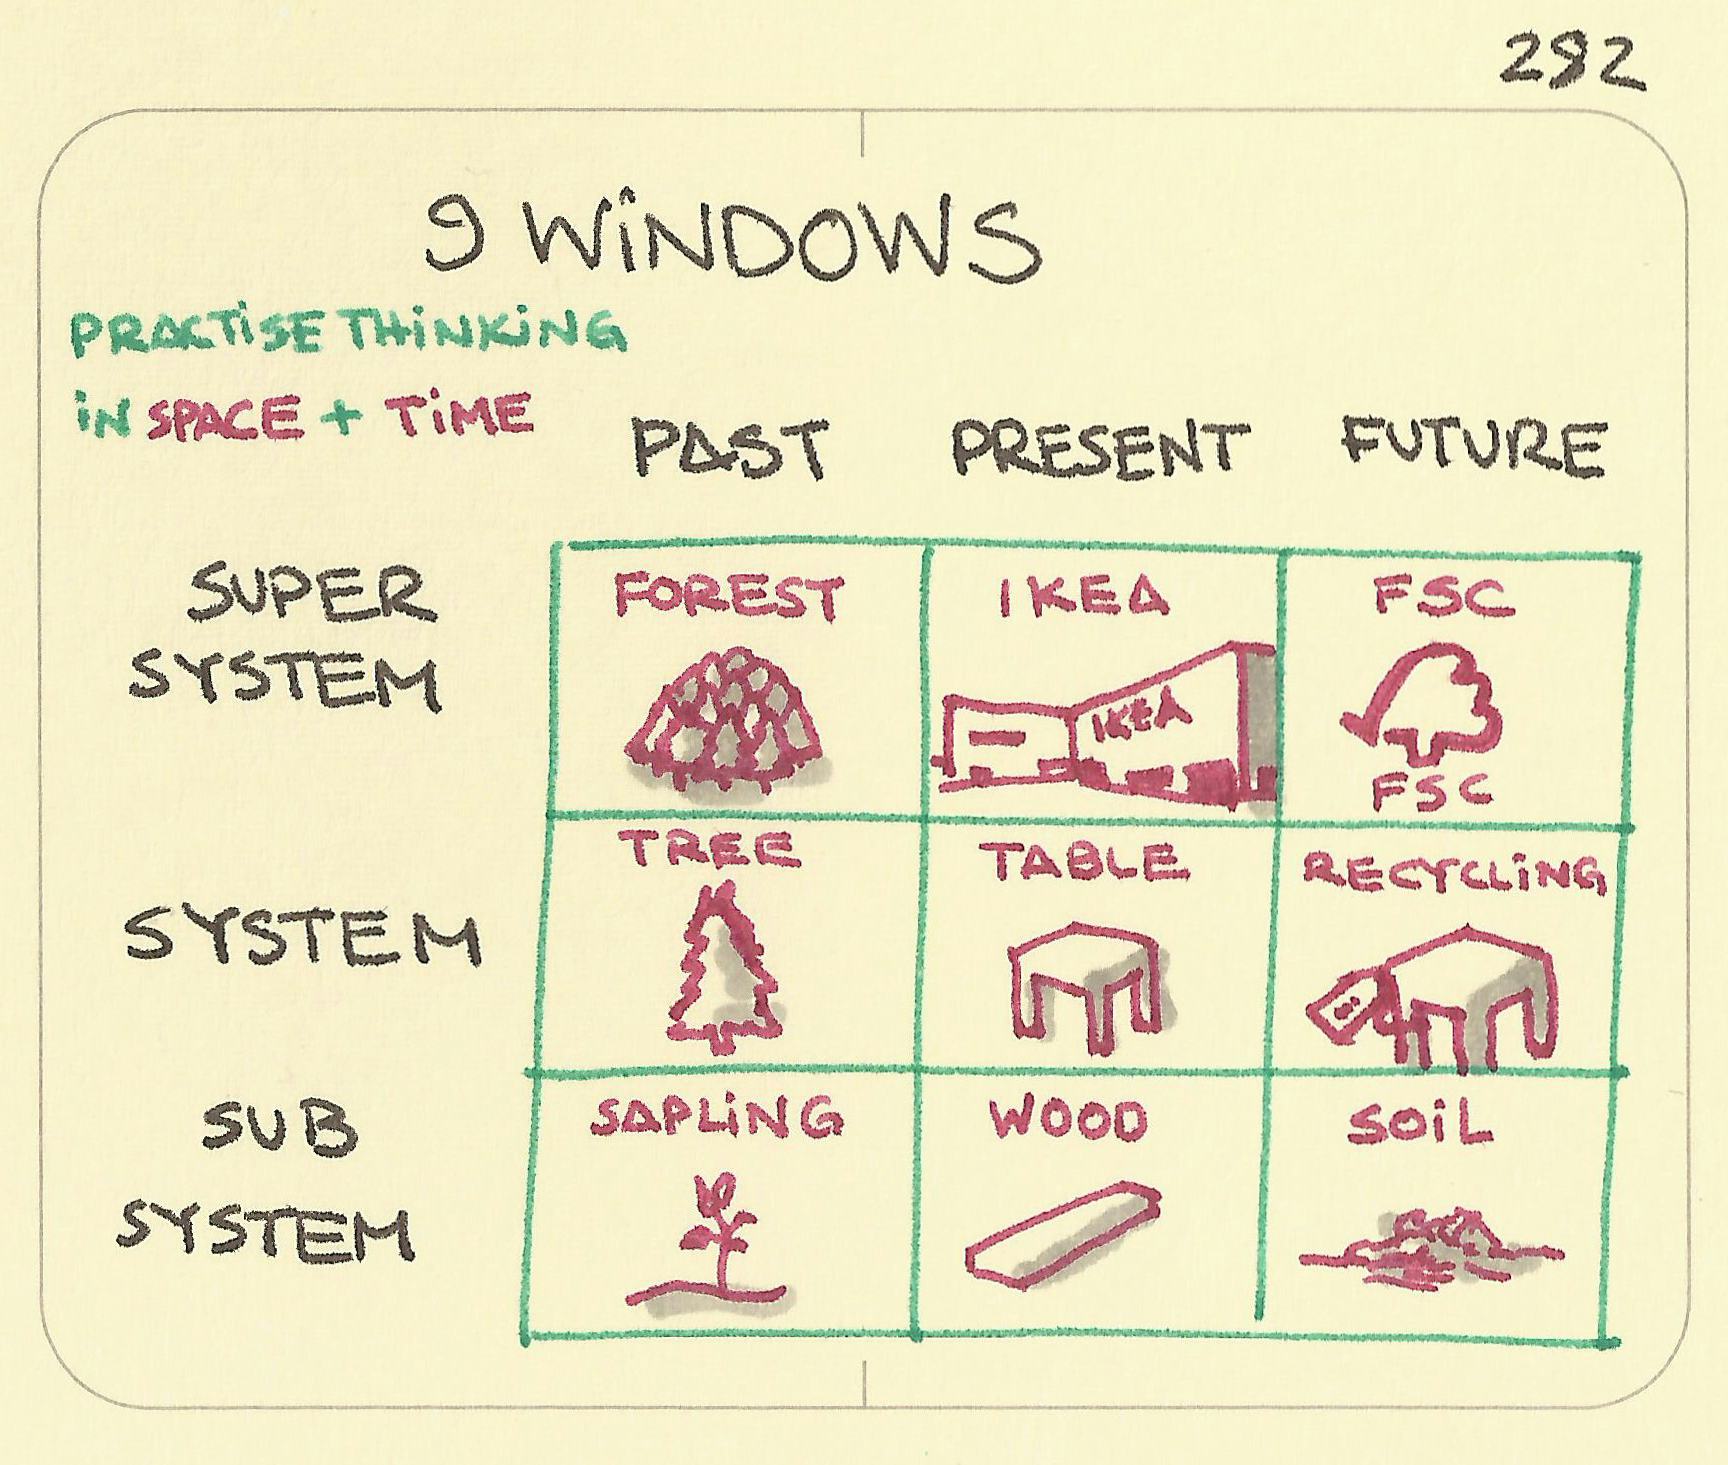 9 Windows - Sketchplanations